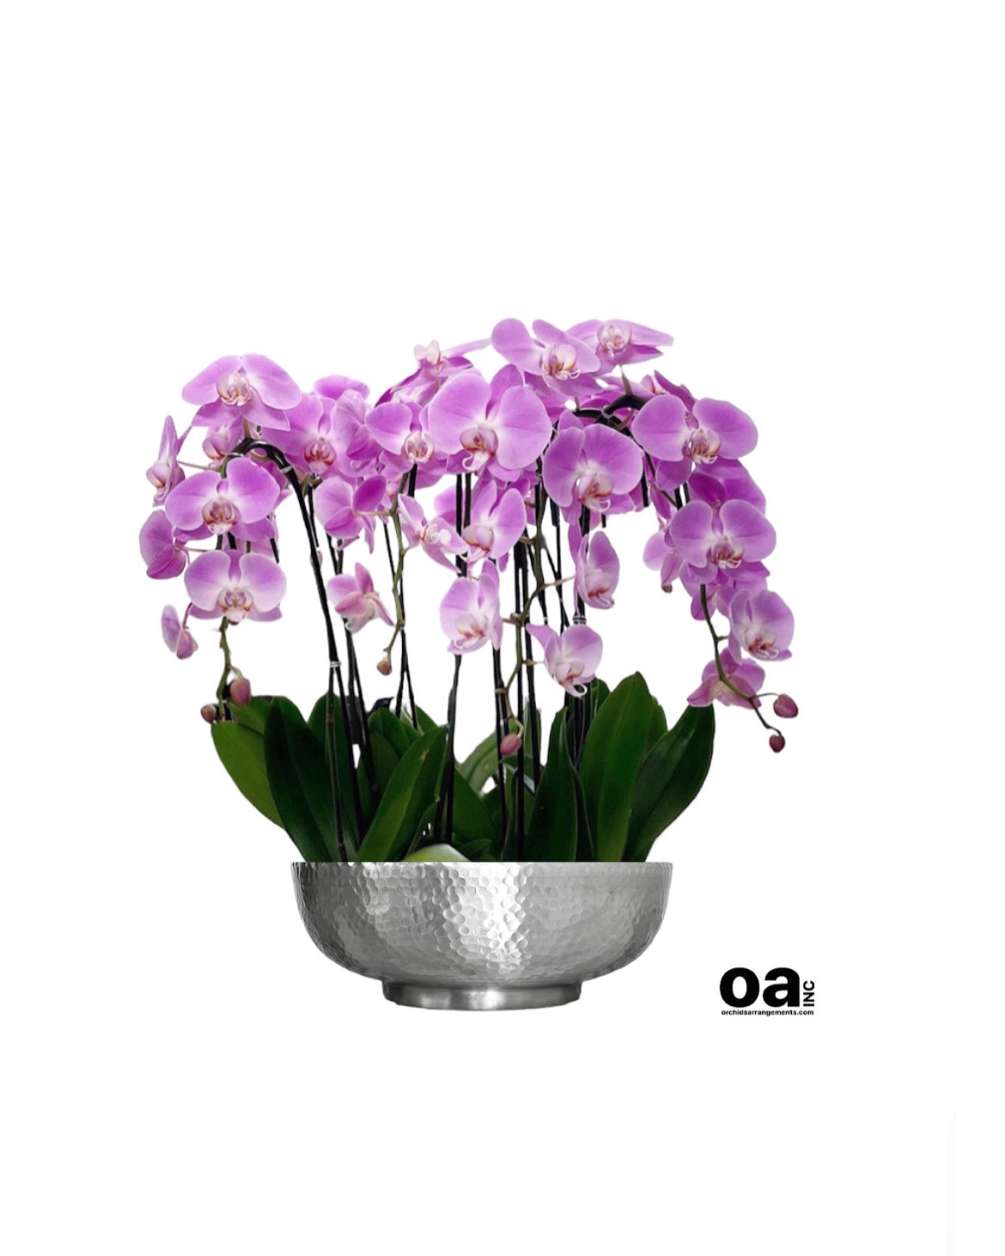 Floral Aventura orchids
8 pink orchids flowers 12&quot; D x 6&quot; T bouquet
Delivery